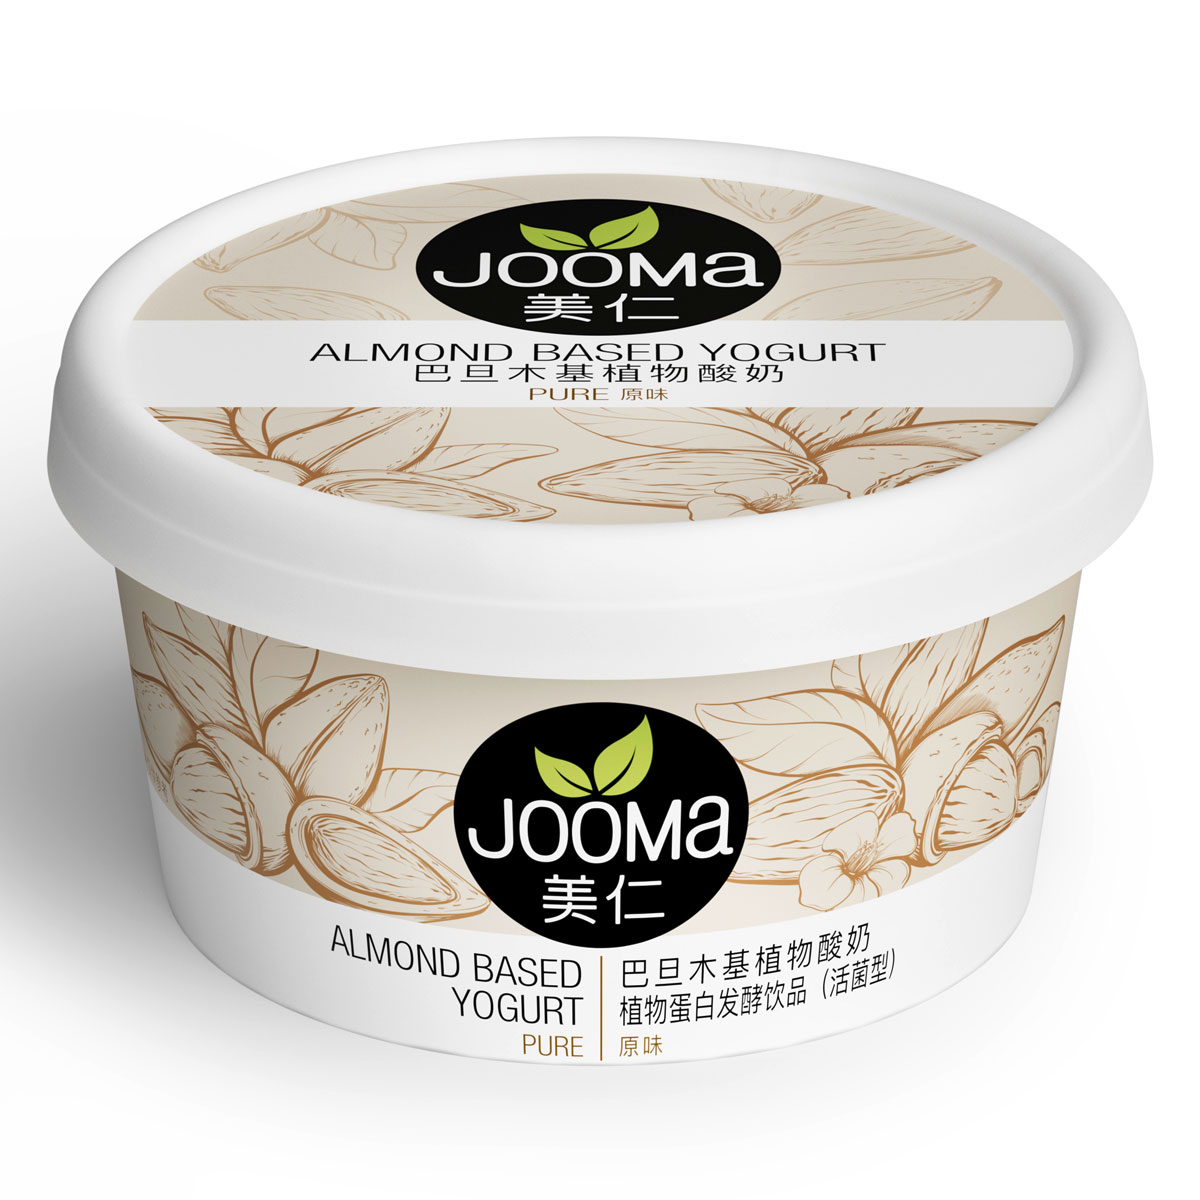 nju-Teaser Jooma, Verpackungsdesign eines Jogurts